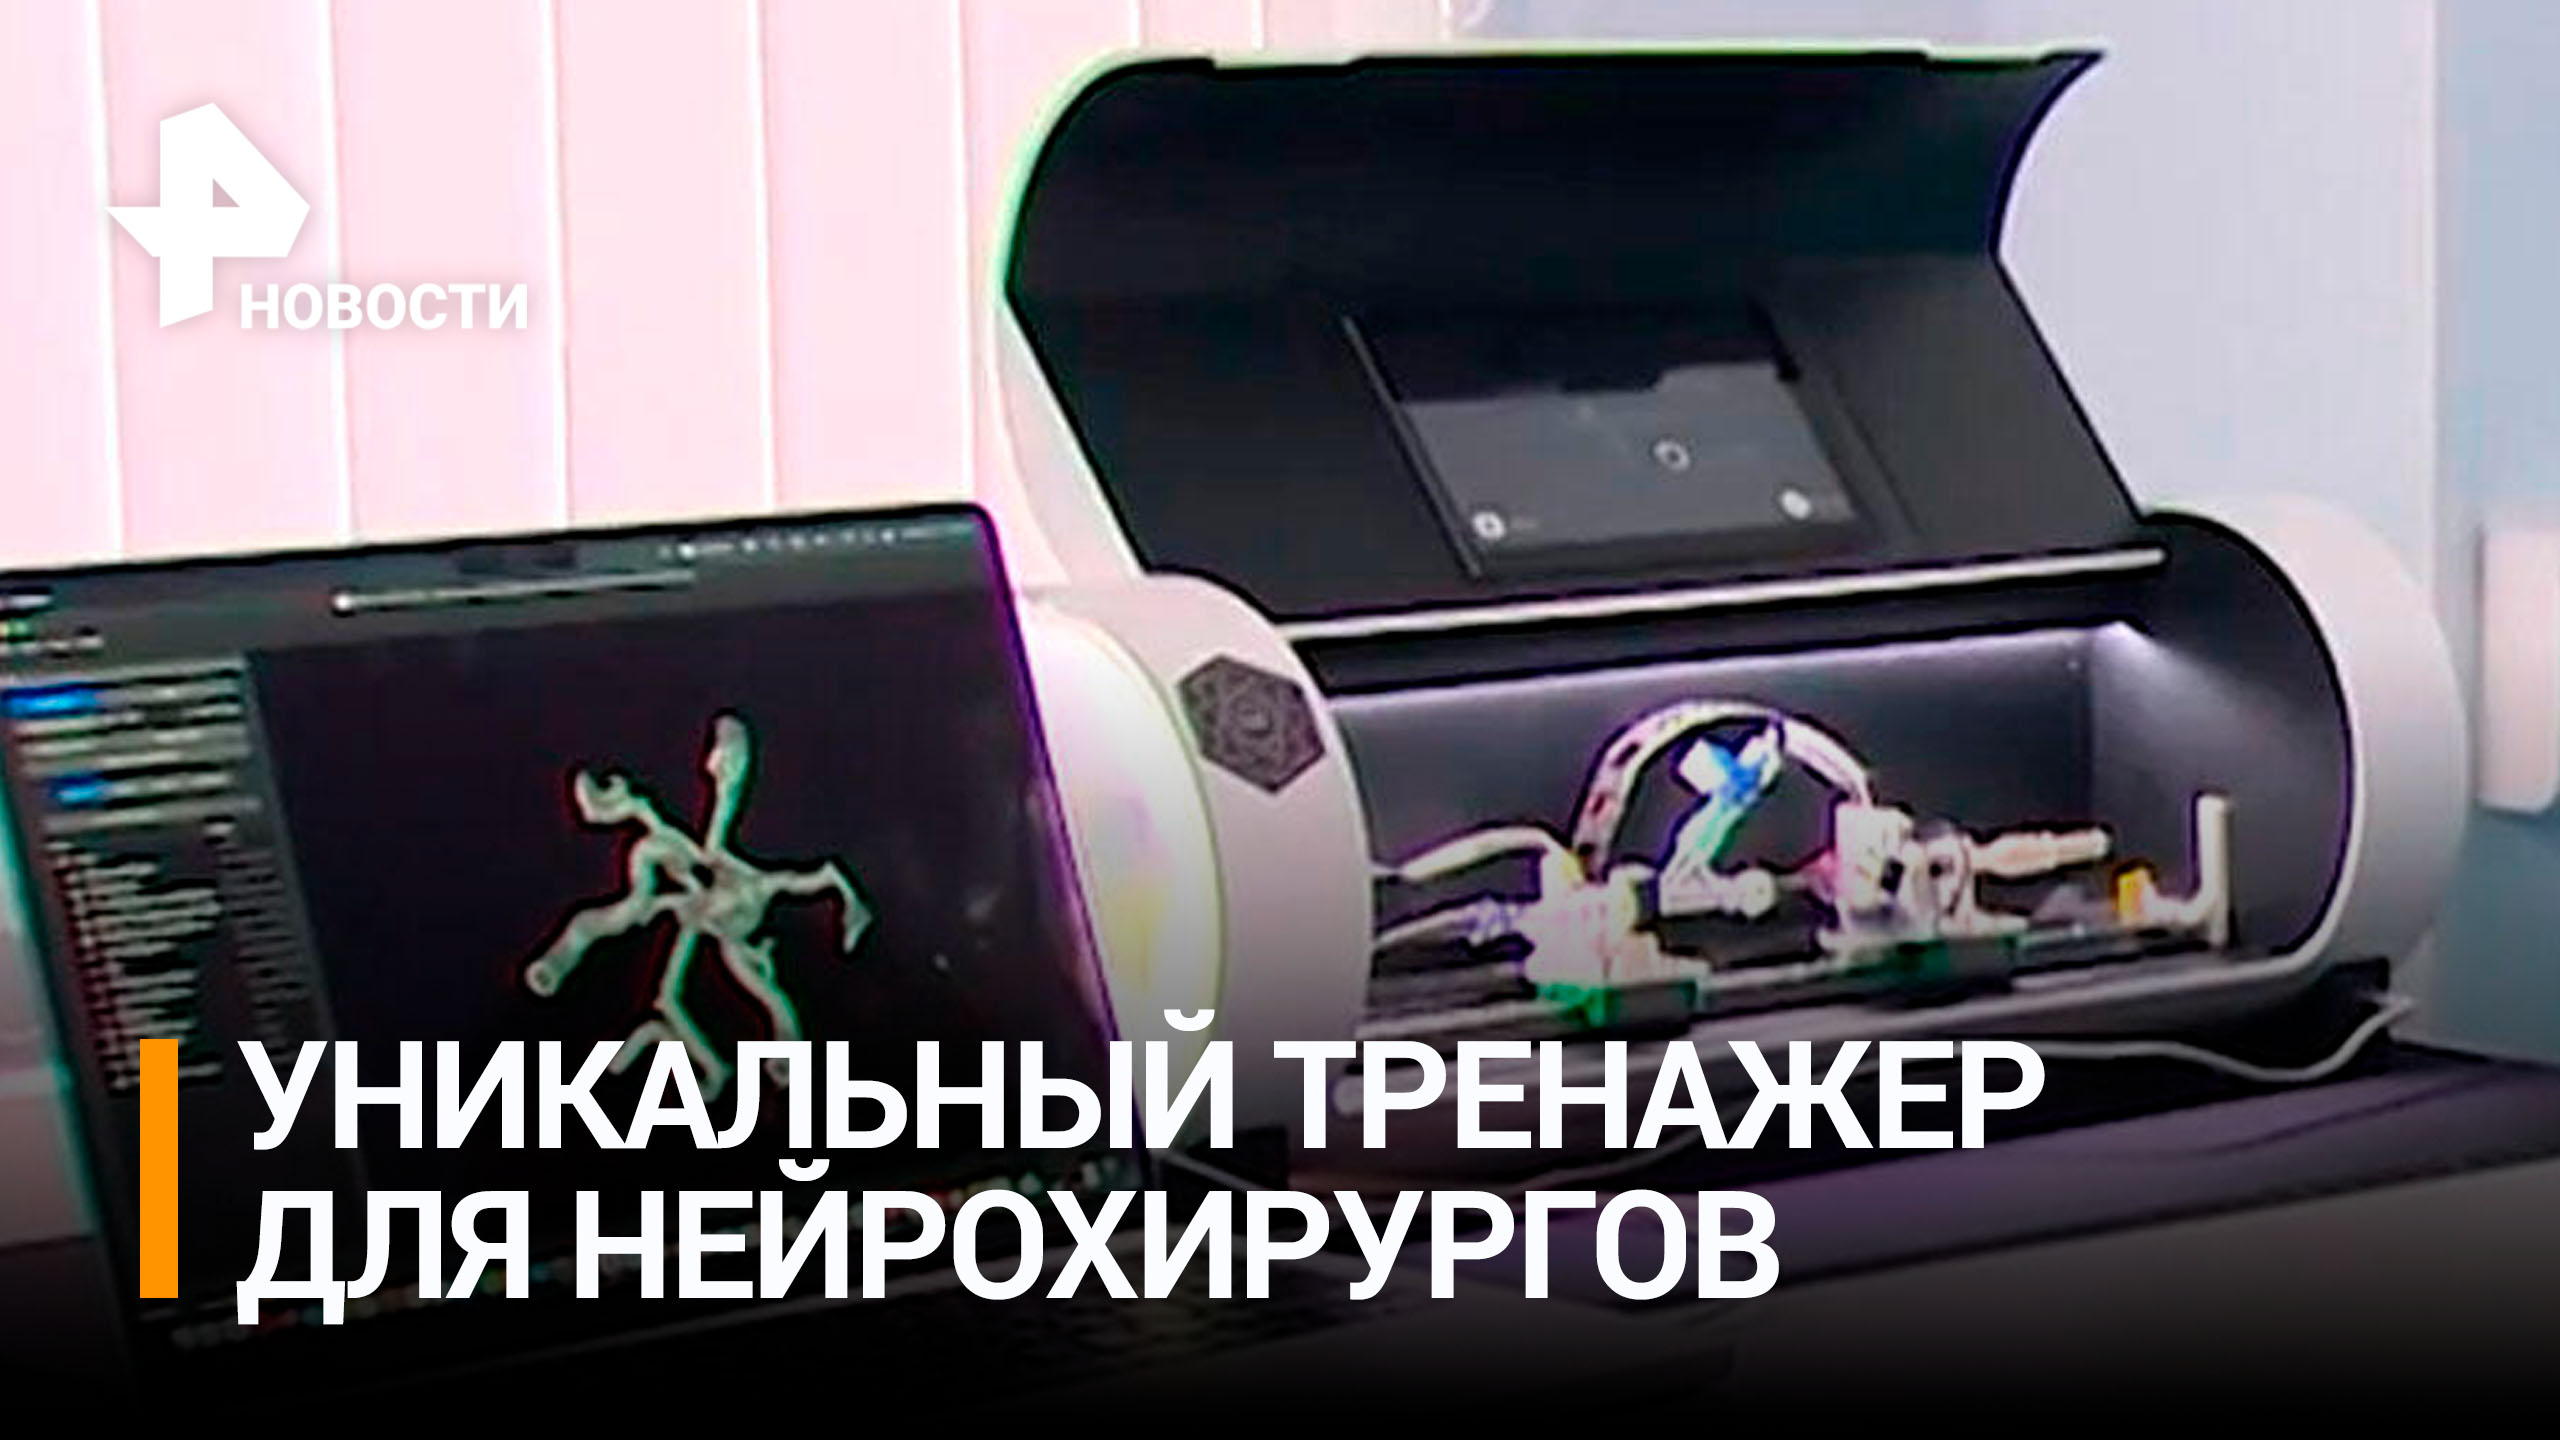 Уникального робота для нейрохирургов создали в России / РЕН Новости